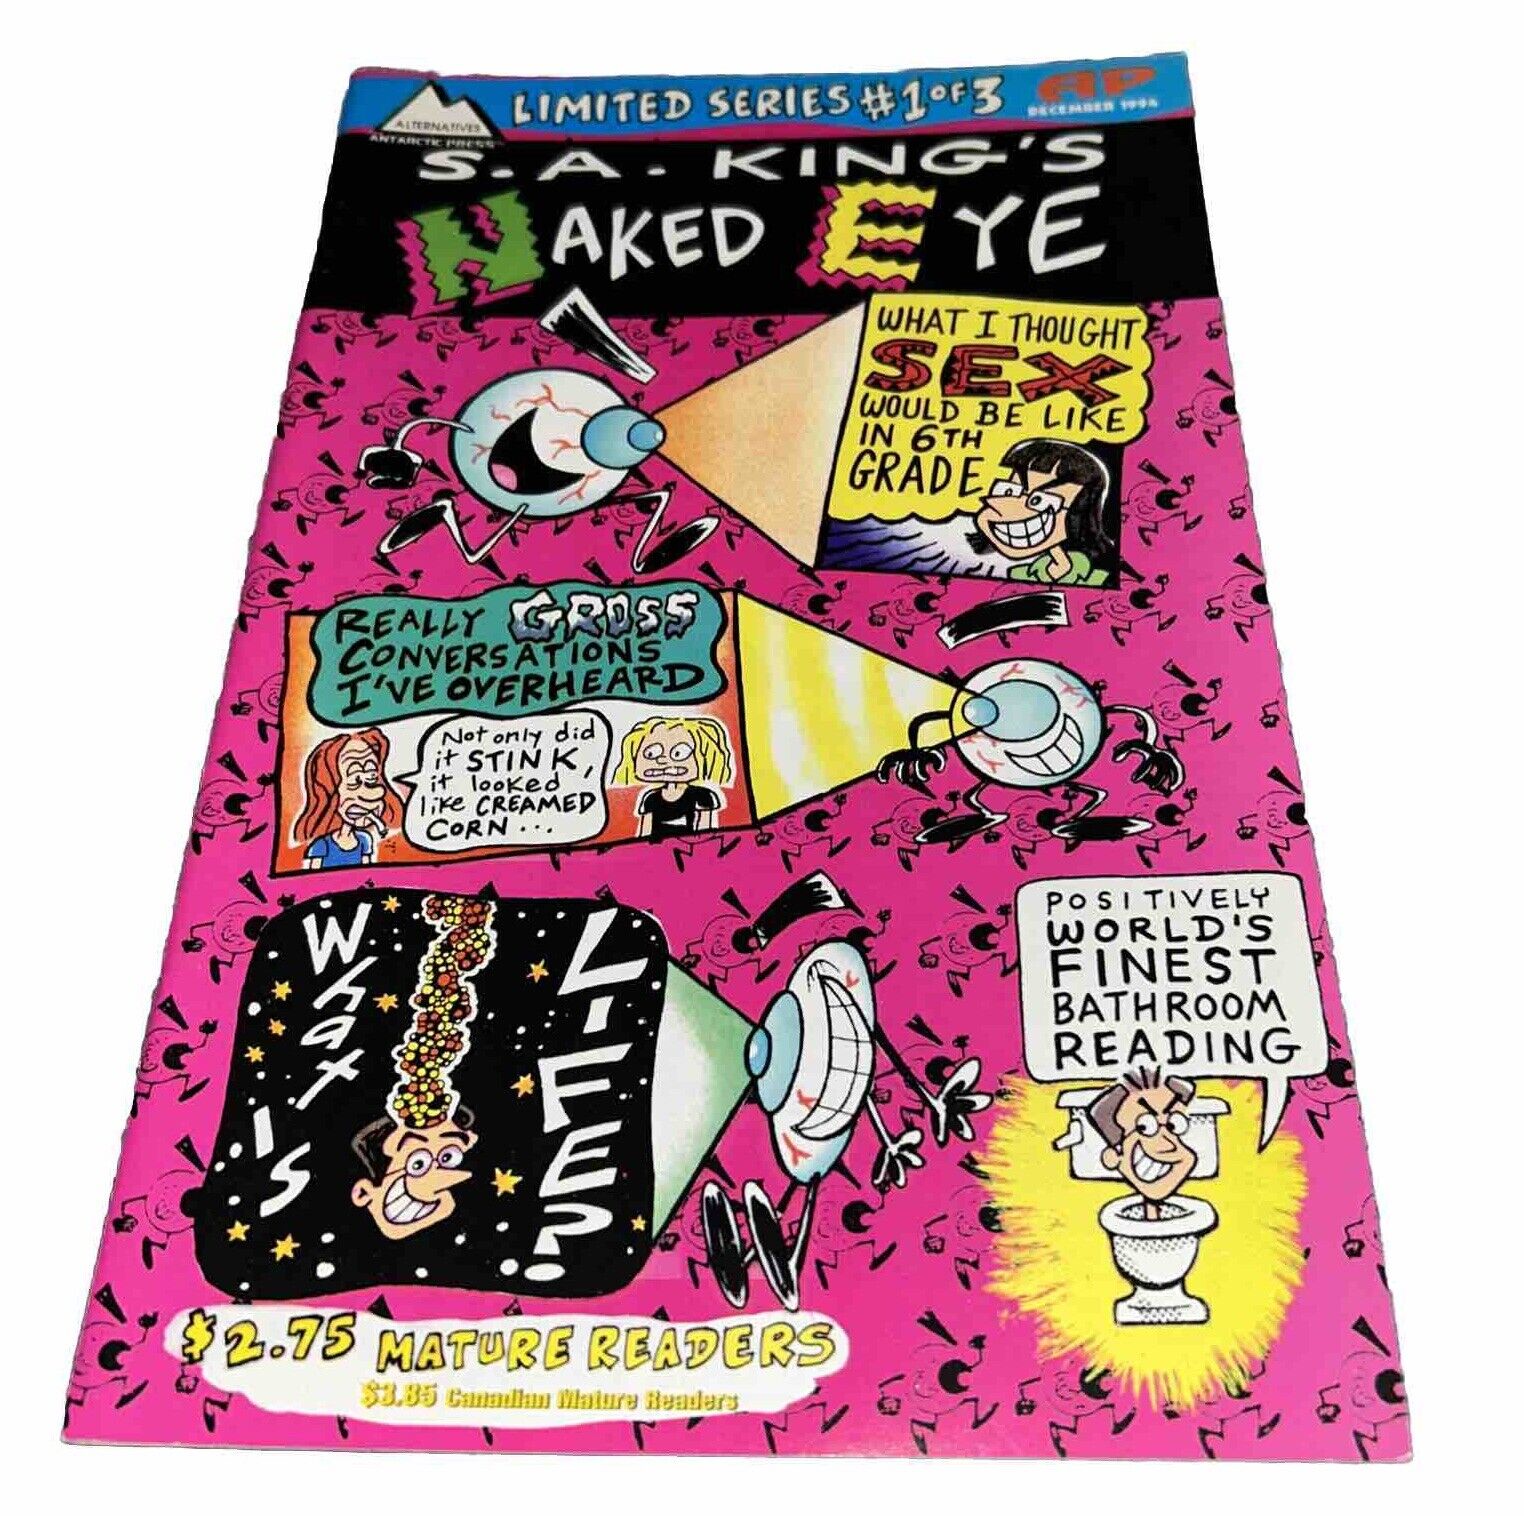 SA King's   Naked Eye #1  Antarctic Press   For Mature Readers  1994 Comic Book